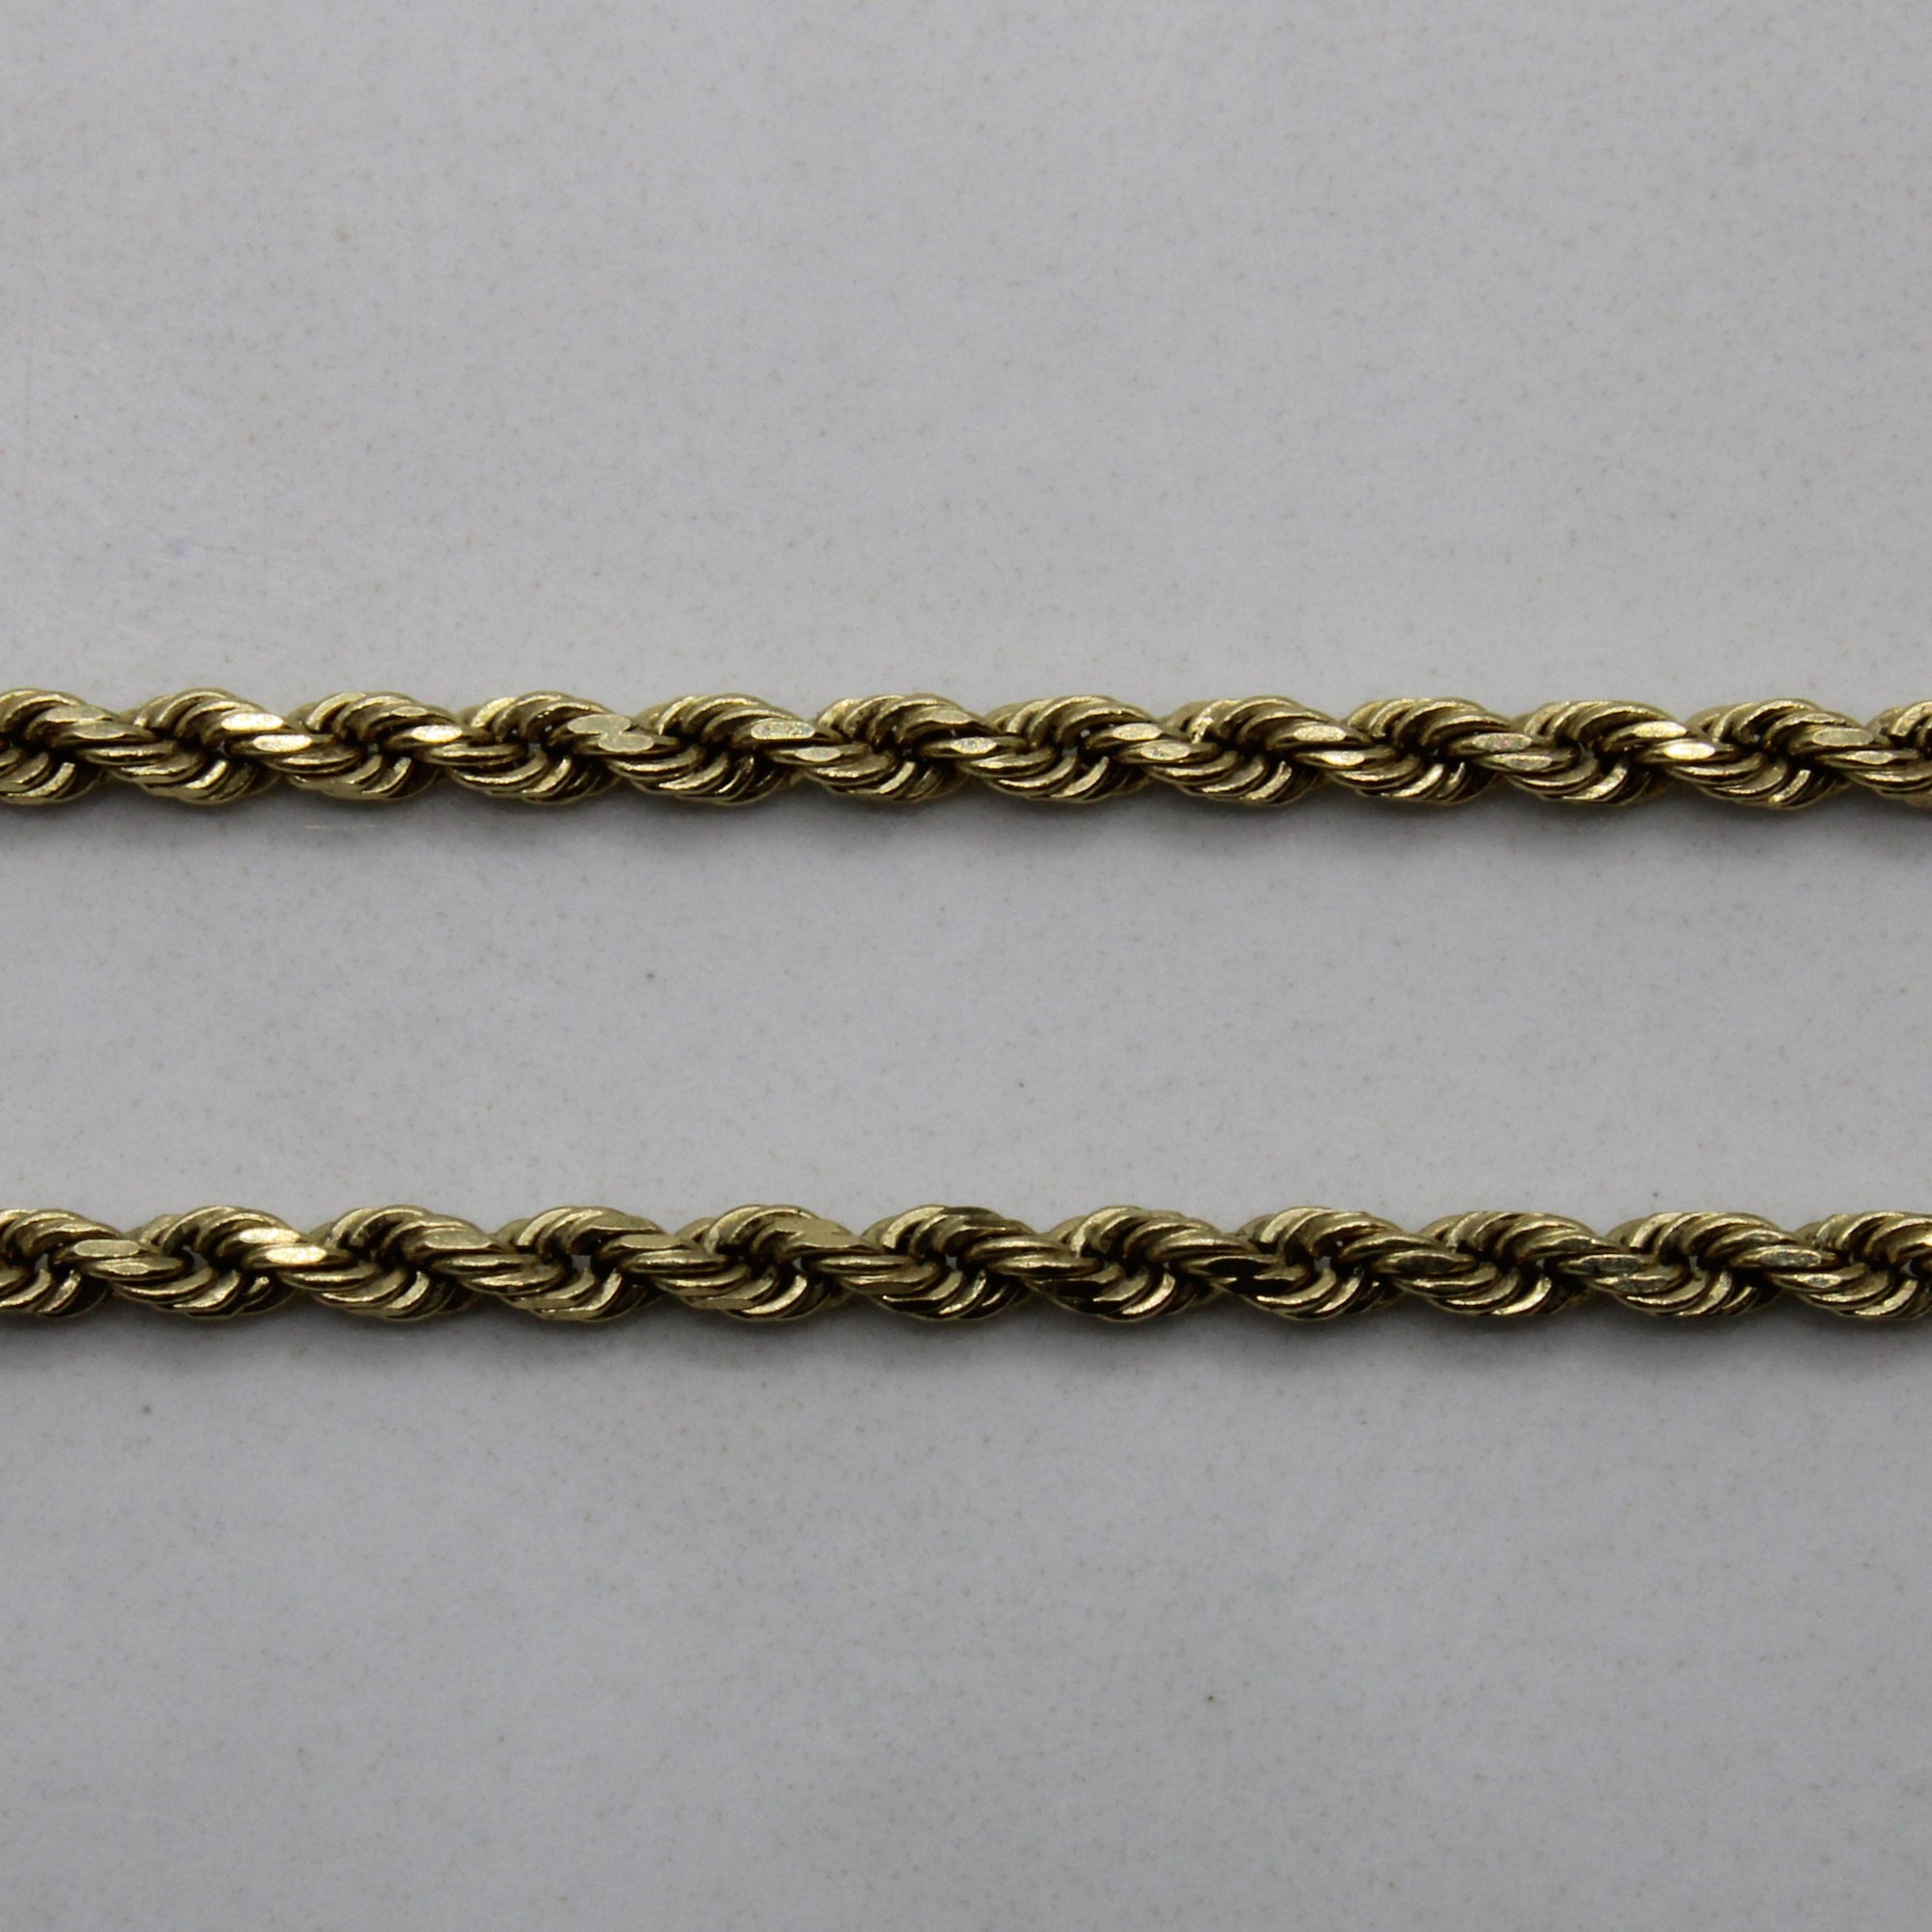 14k Yellow Gold Rope Chain | 21